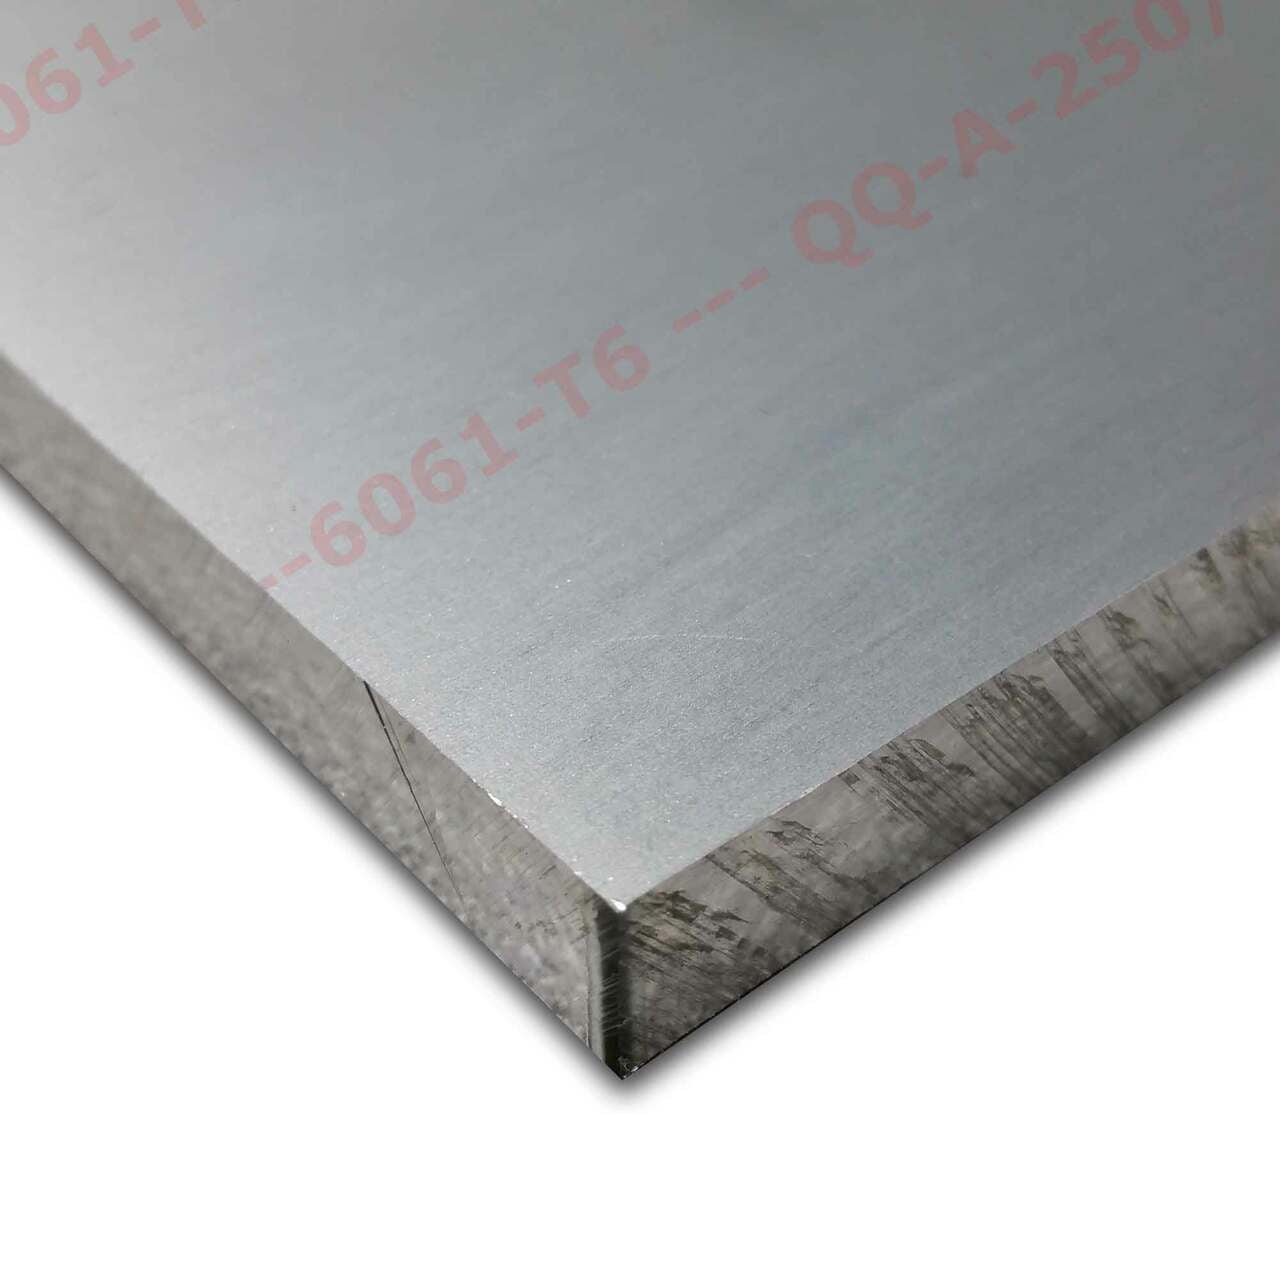 1/16 x 12 x 15 Aluminum Plate 5052 Aluminum 16 Gauge